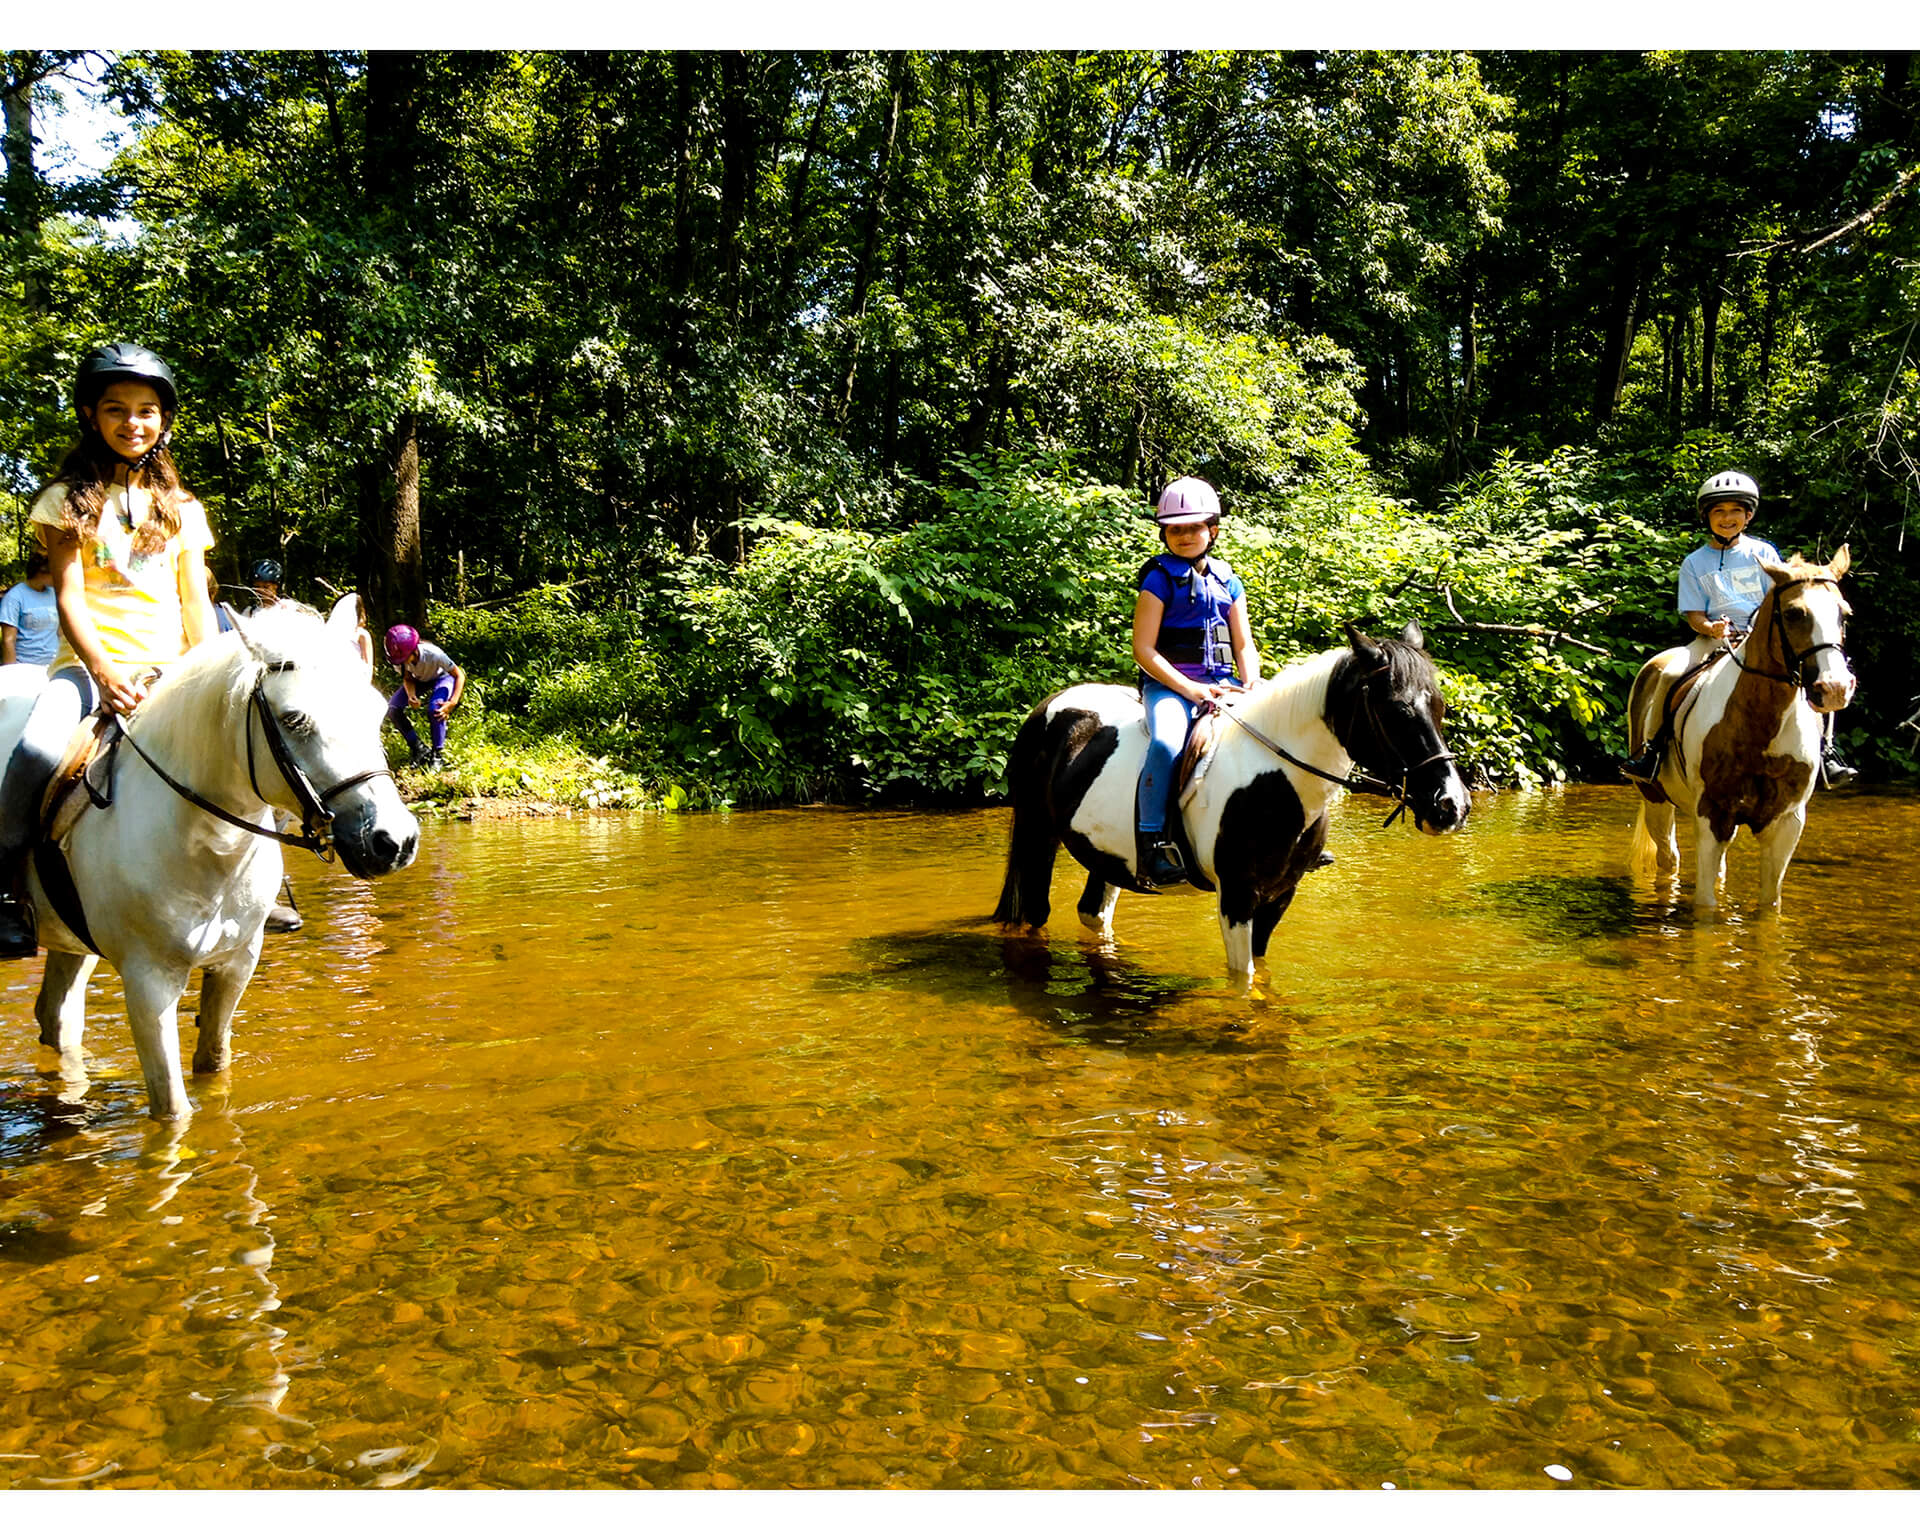 Girls On Horseback in River